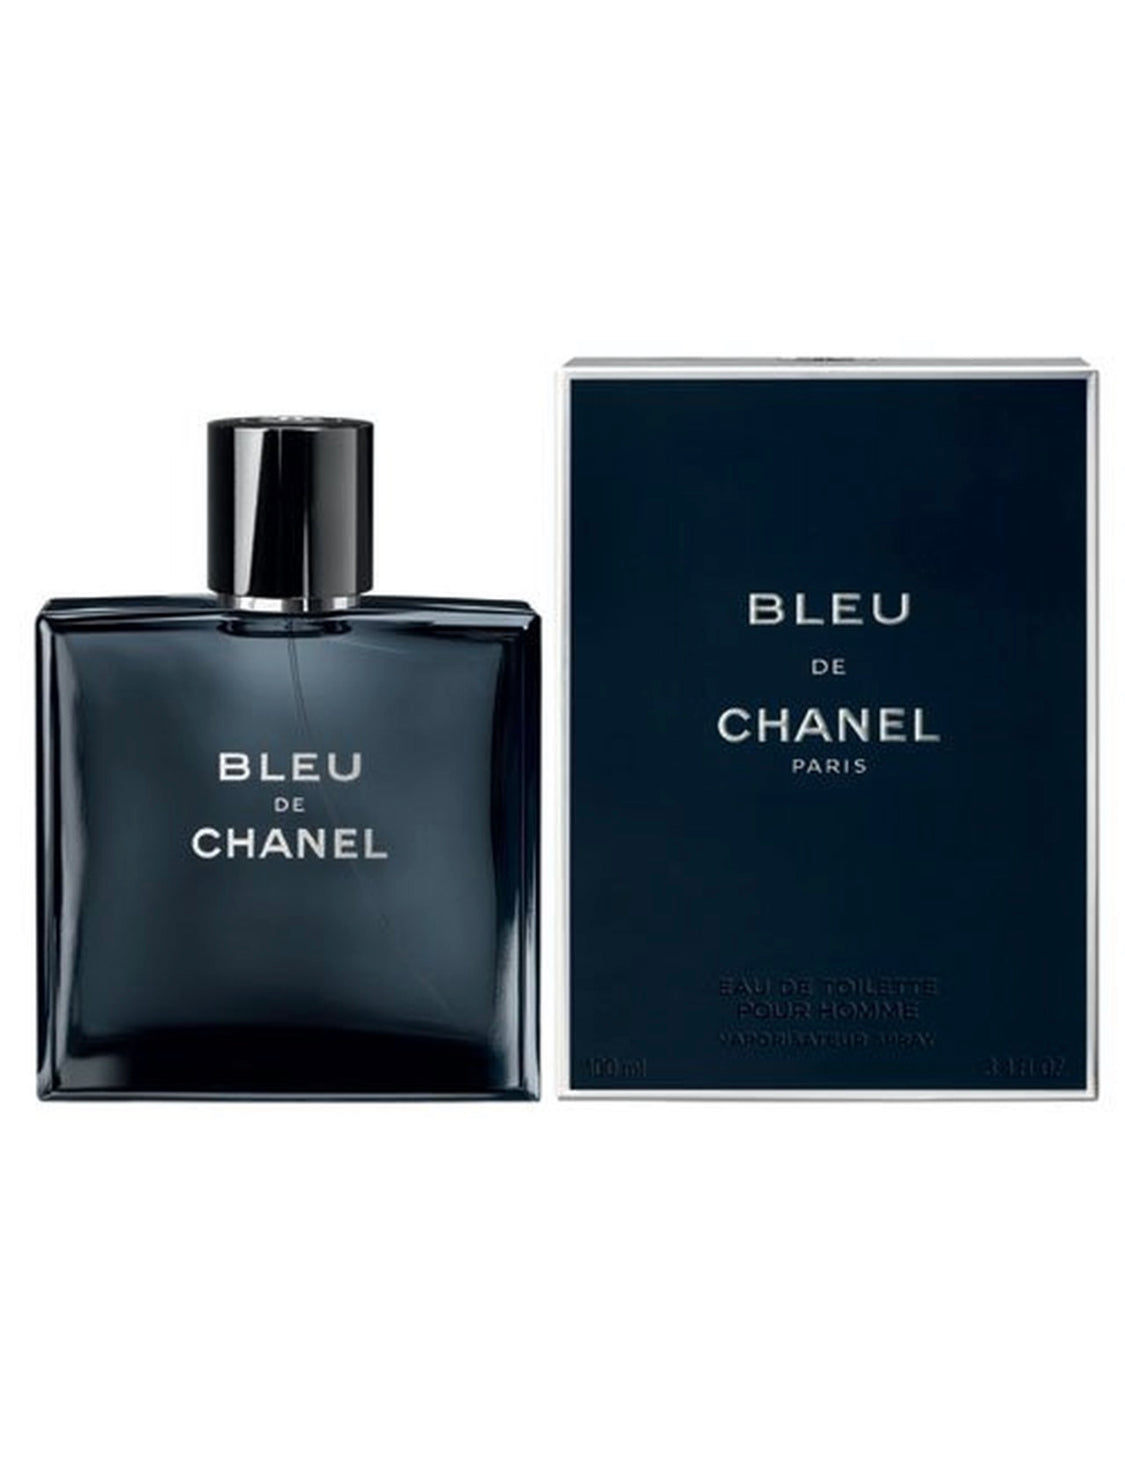 Is this Bleu de Chanel authentic? : r/fragrance